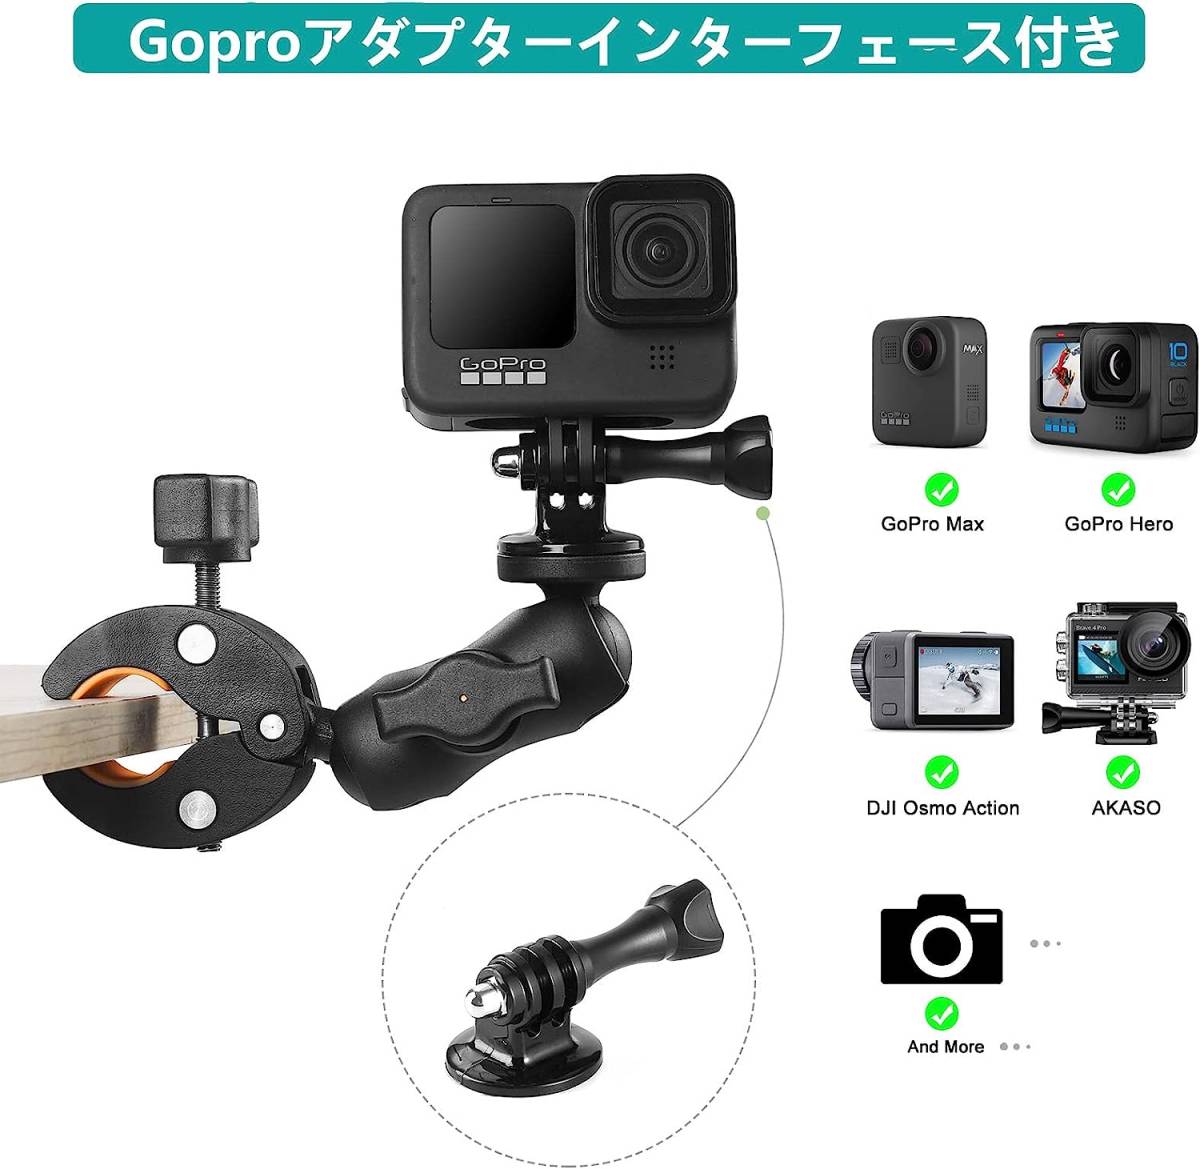 スーパークランプ カメラマウント サポート 調整 クリップ 角度 ホルダー Gopro カメラ マウント 蟹バサミ カメラアクセサリーにどうぞ!_画像4